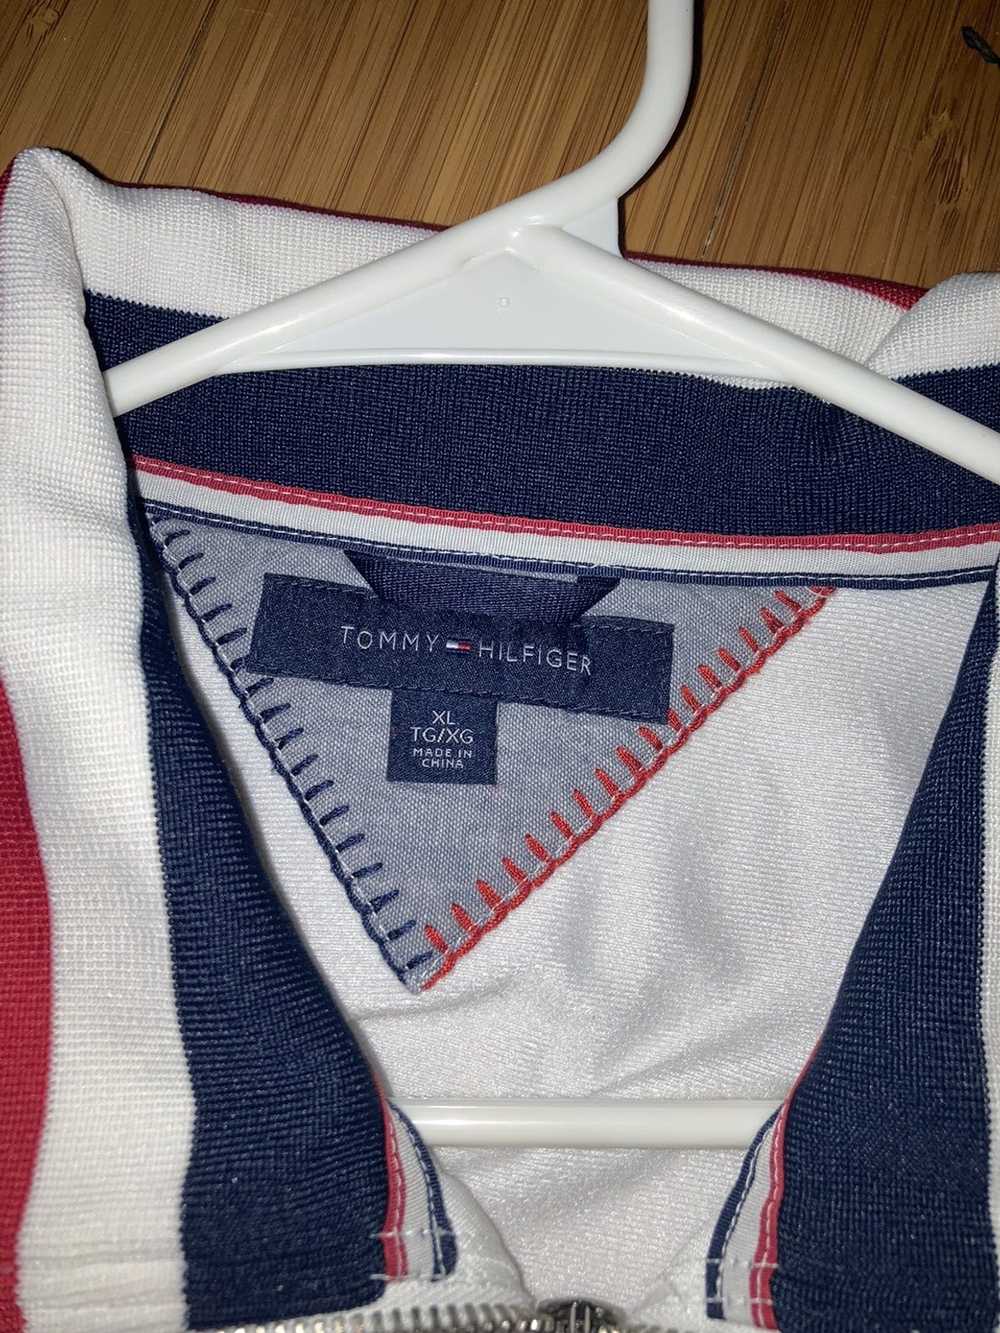 Tommy Hilfiger Tommy Hilfiger zip up sweatshirt - image 2